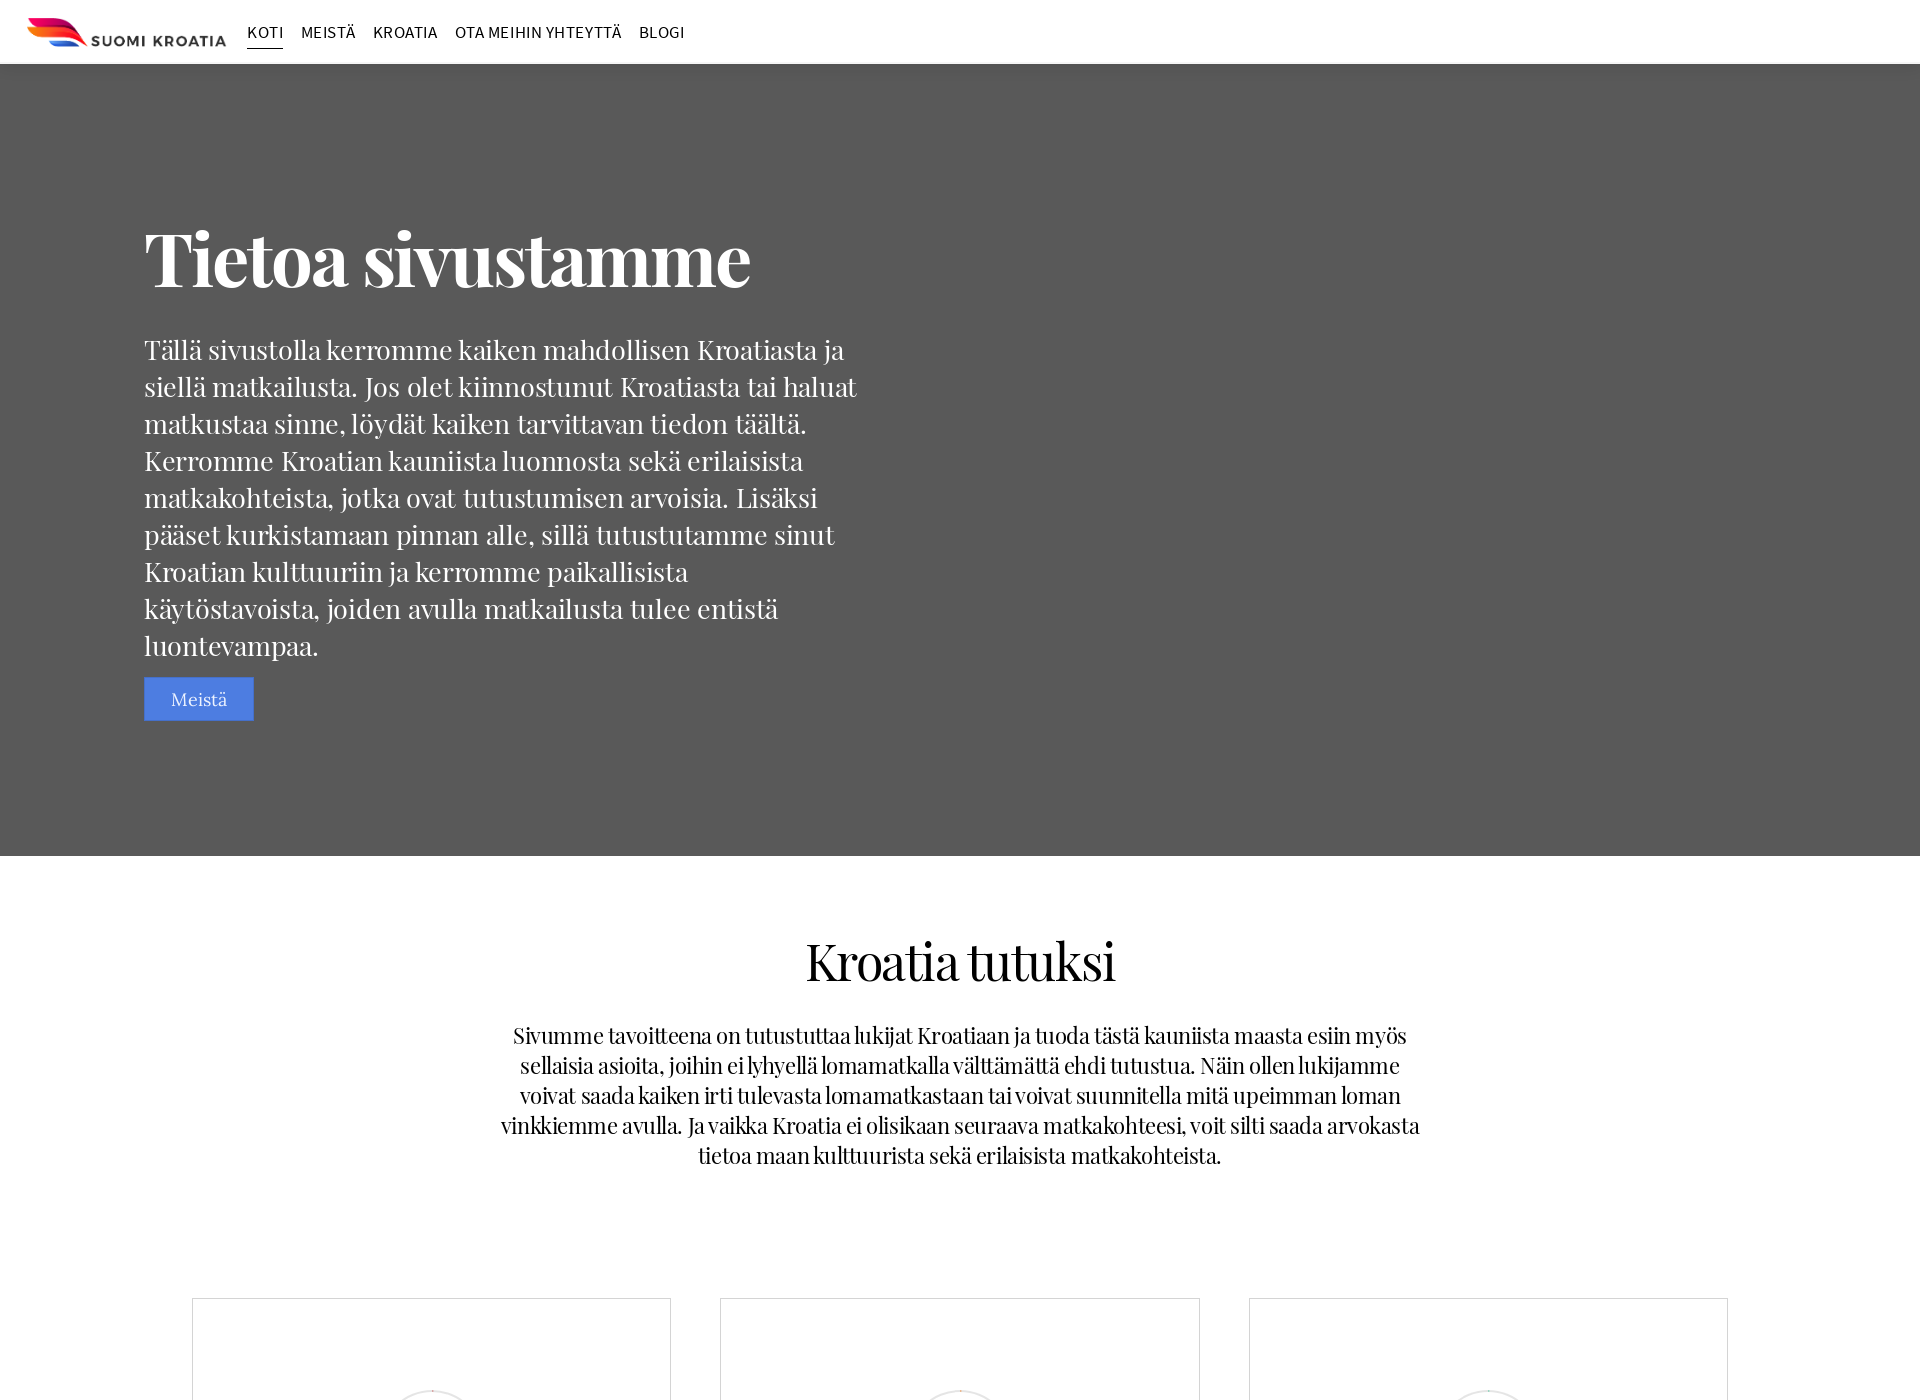 Screenshot for suomikroatia.fi